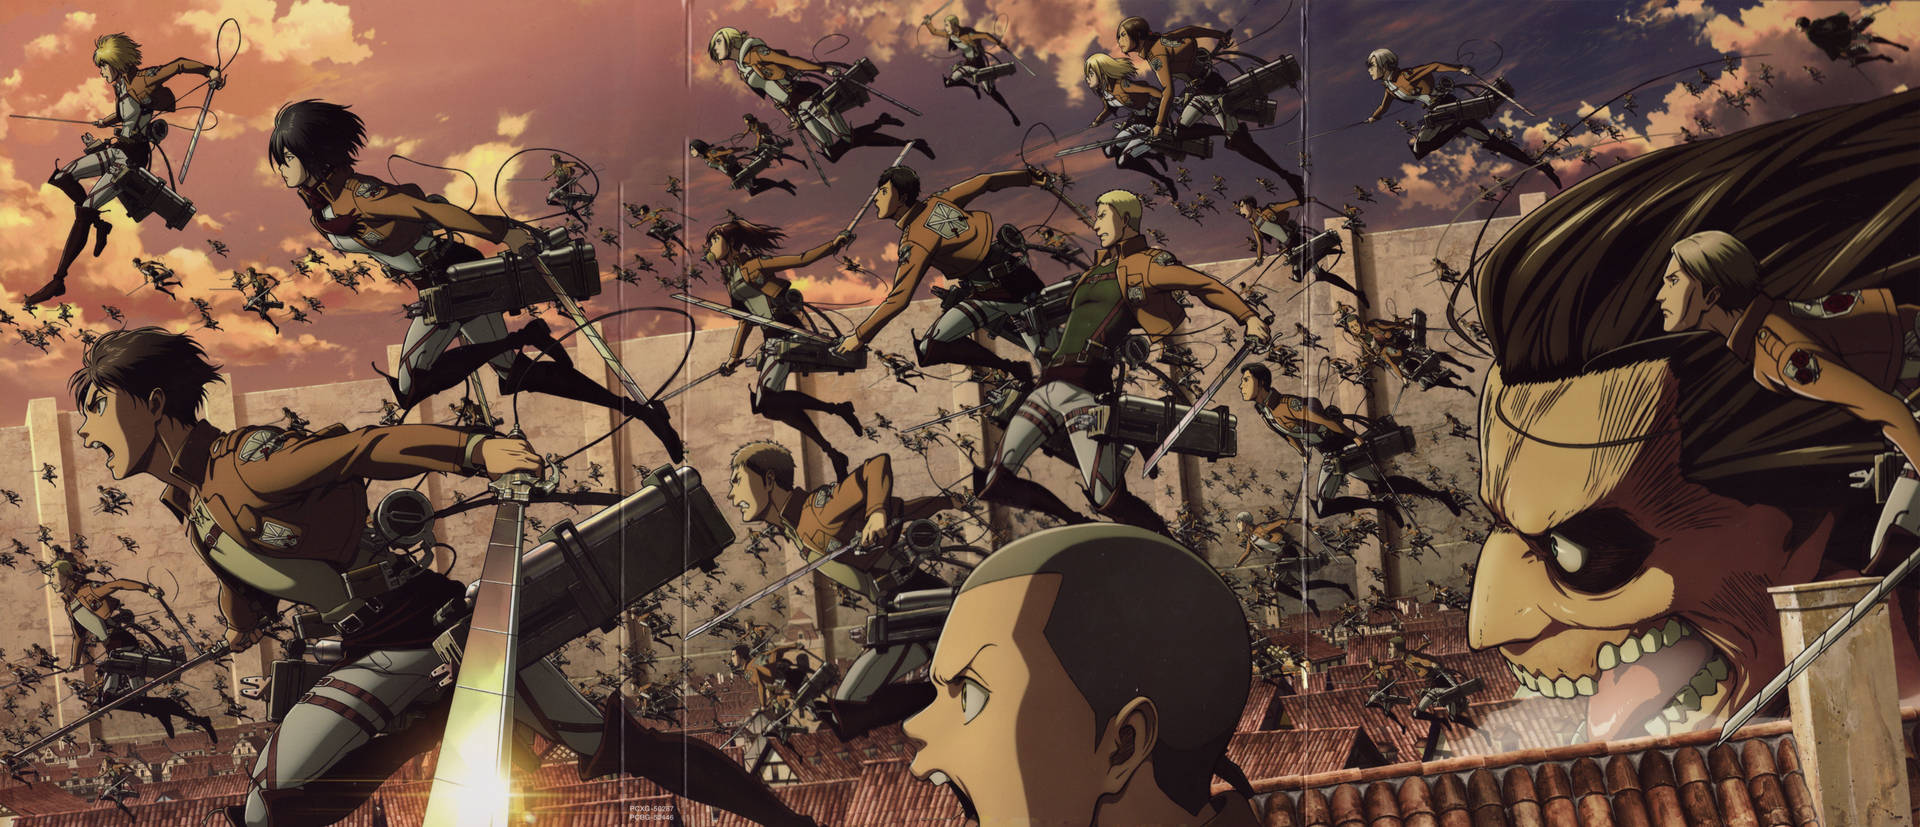 Attackon Titan Bakgrundsbild. Wallpaper